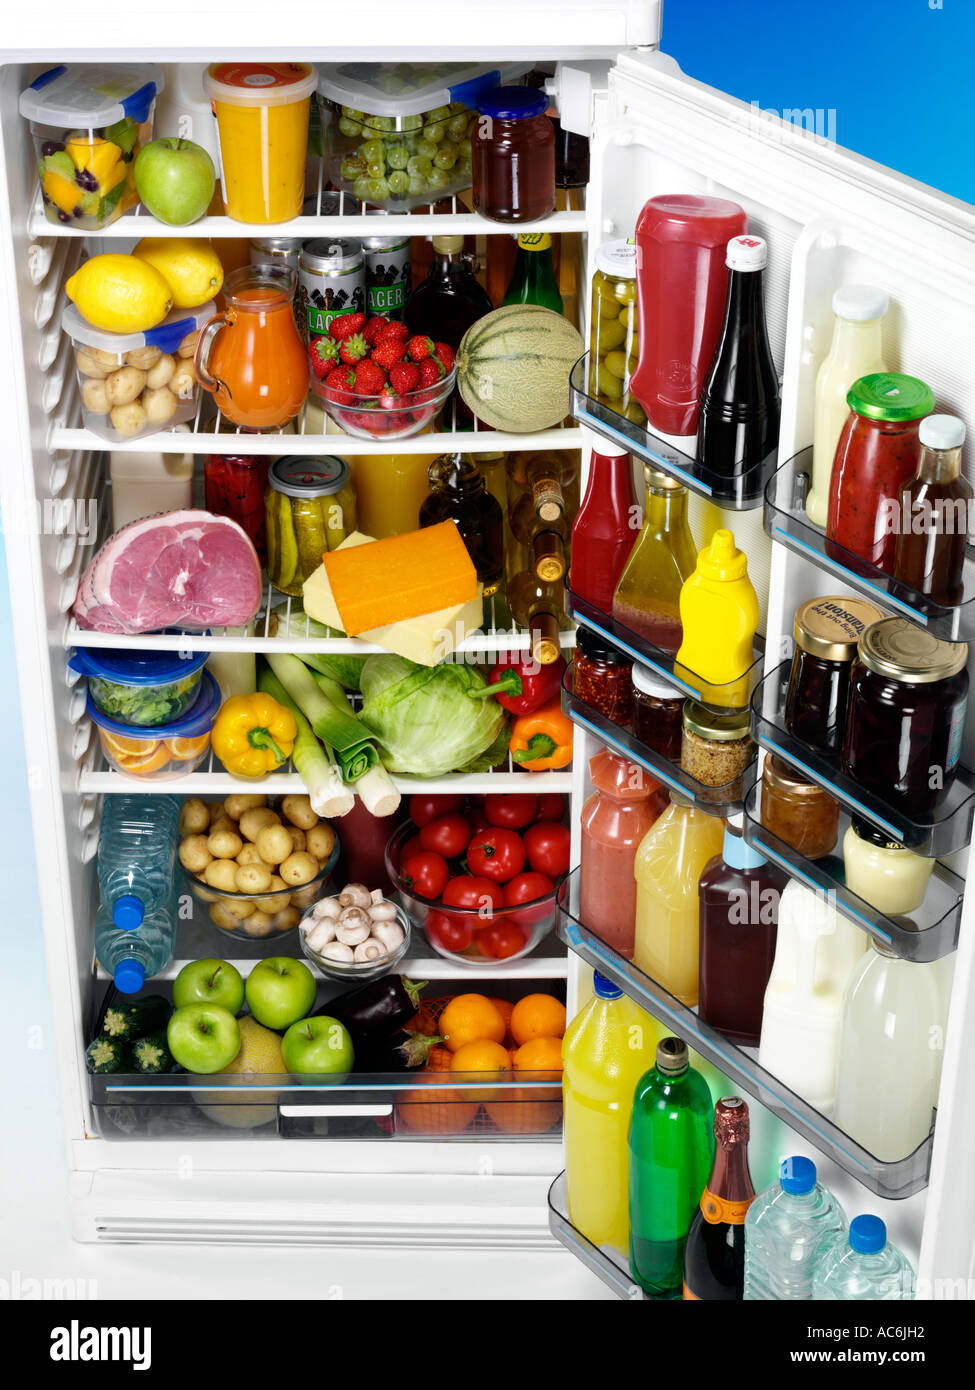 Можно будет купить в 7. Холодильник с продуктами. Полный холодильник продуктов. Холодильник с едой. Полный холодильник фруктов.